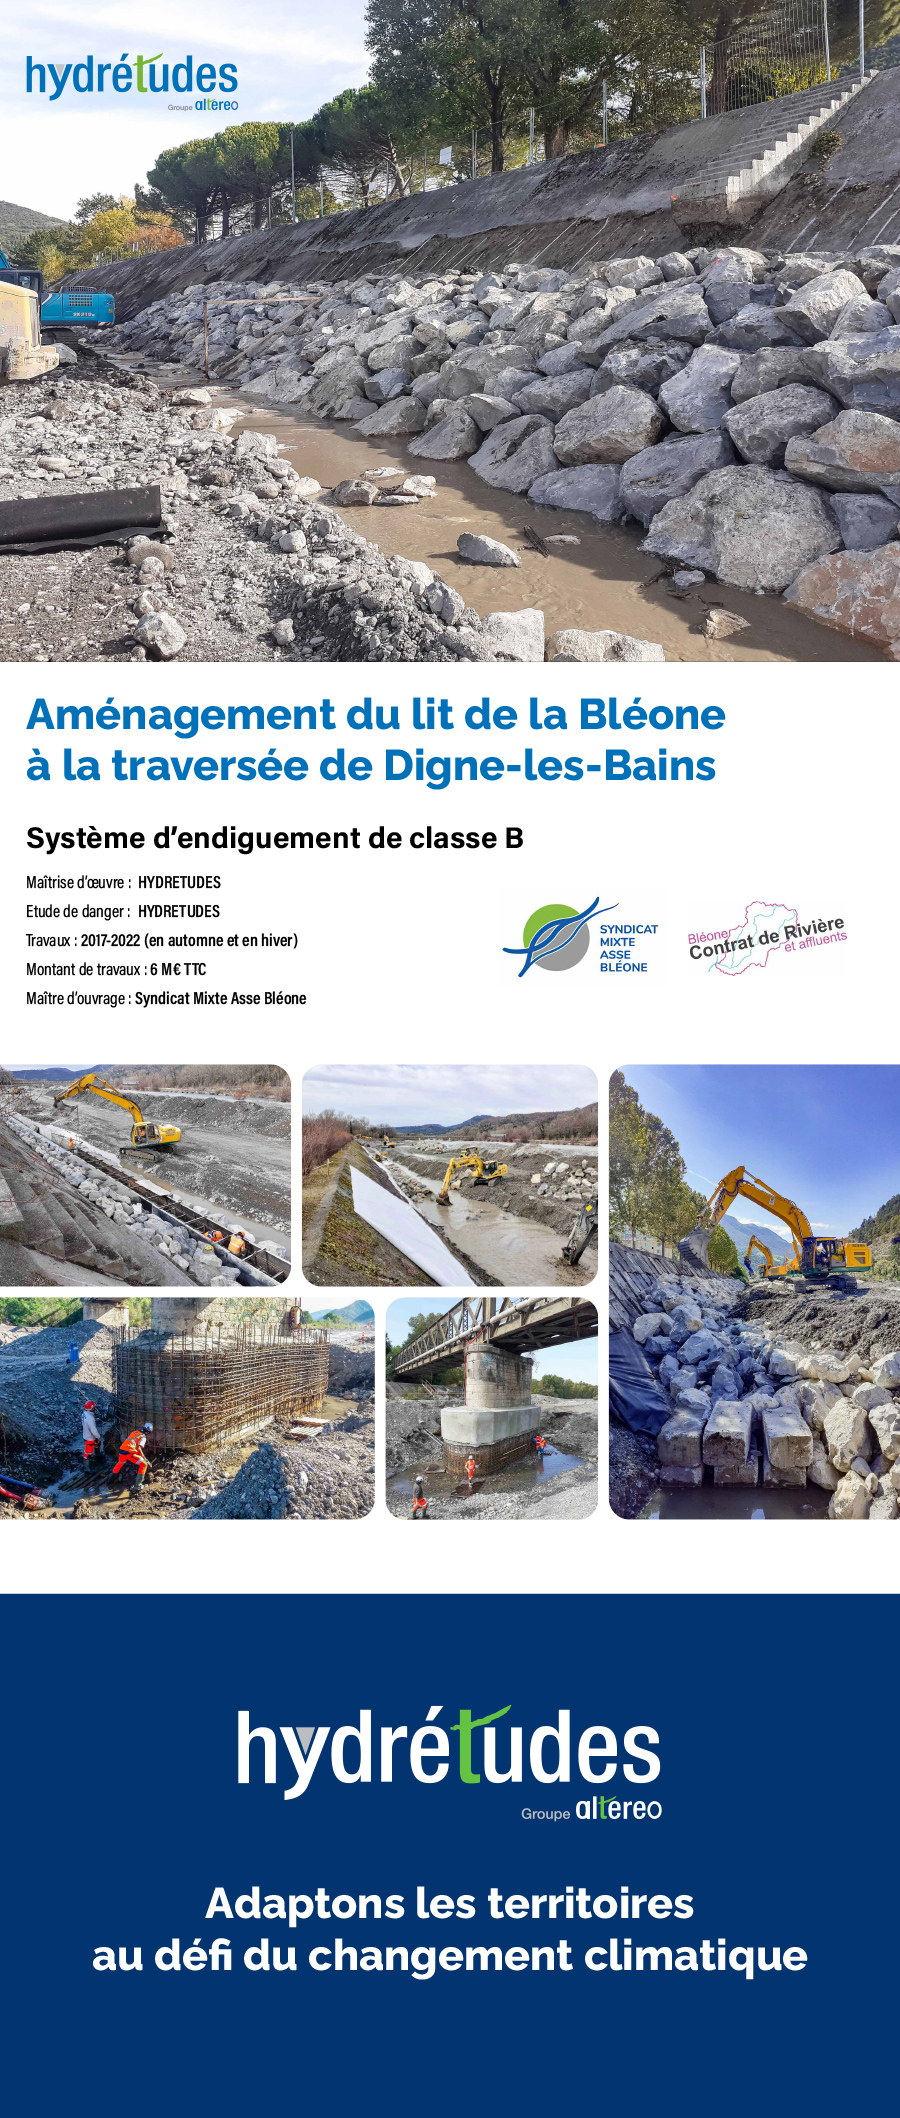 Hydrétudes projet d'aménagement du lit de la Bléone à la traversée de Digne-les-Bains